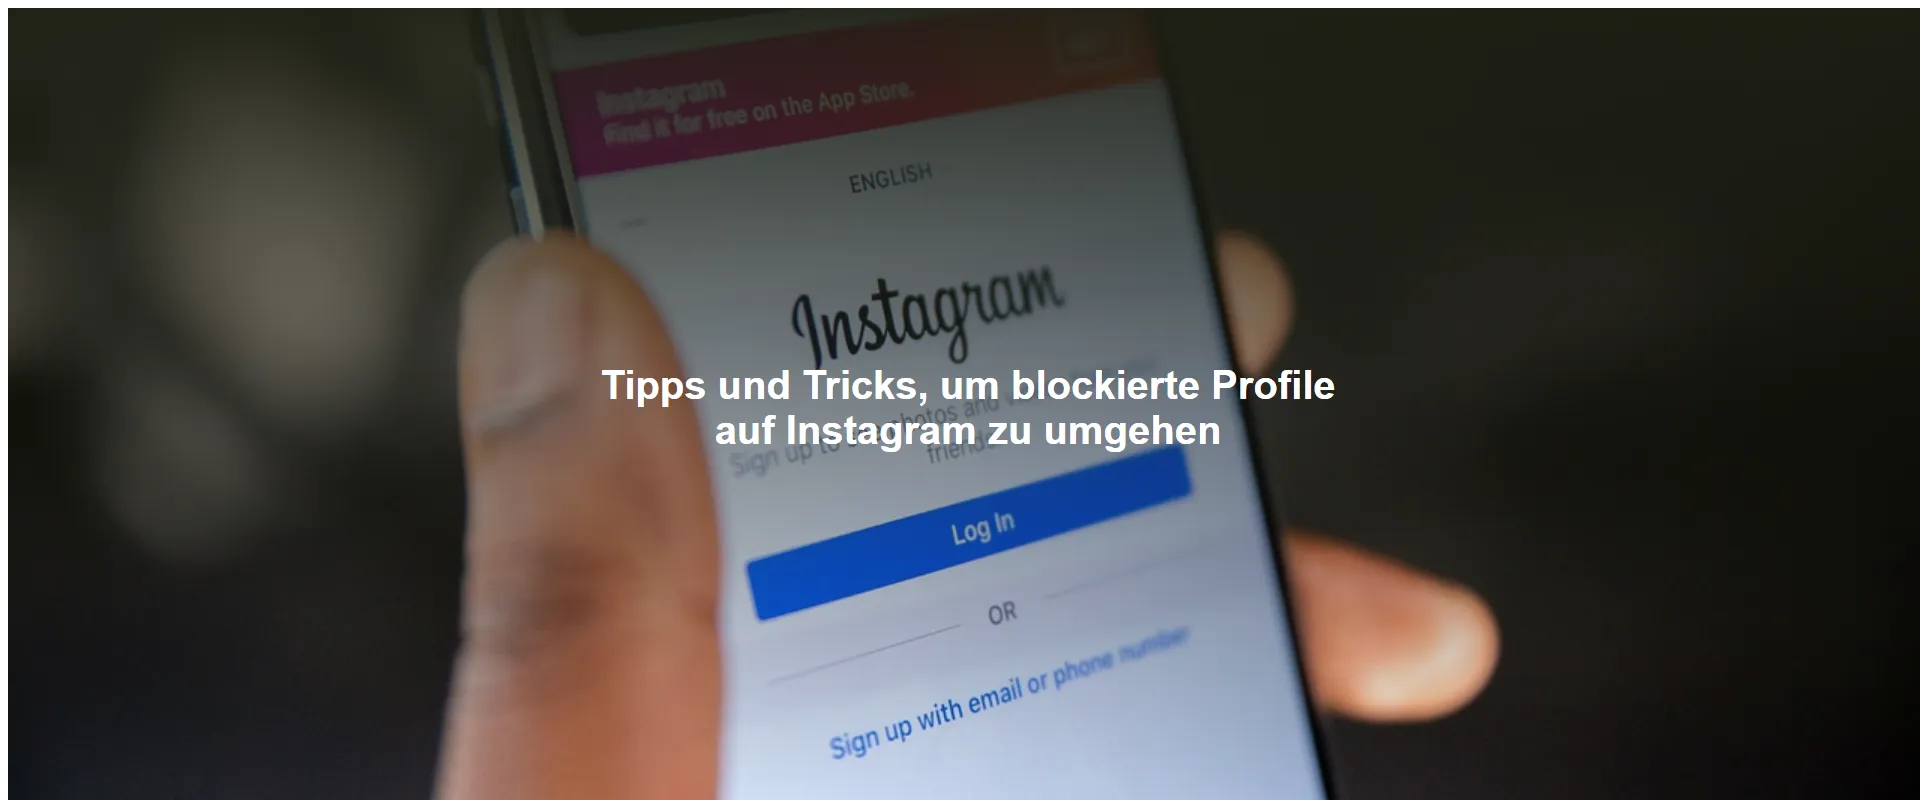 Tipps und Tricks, um blockierte Profile auf Instagram zu umgehen